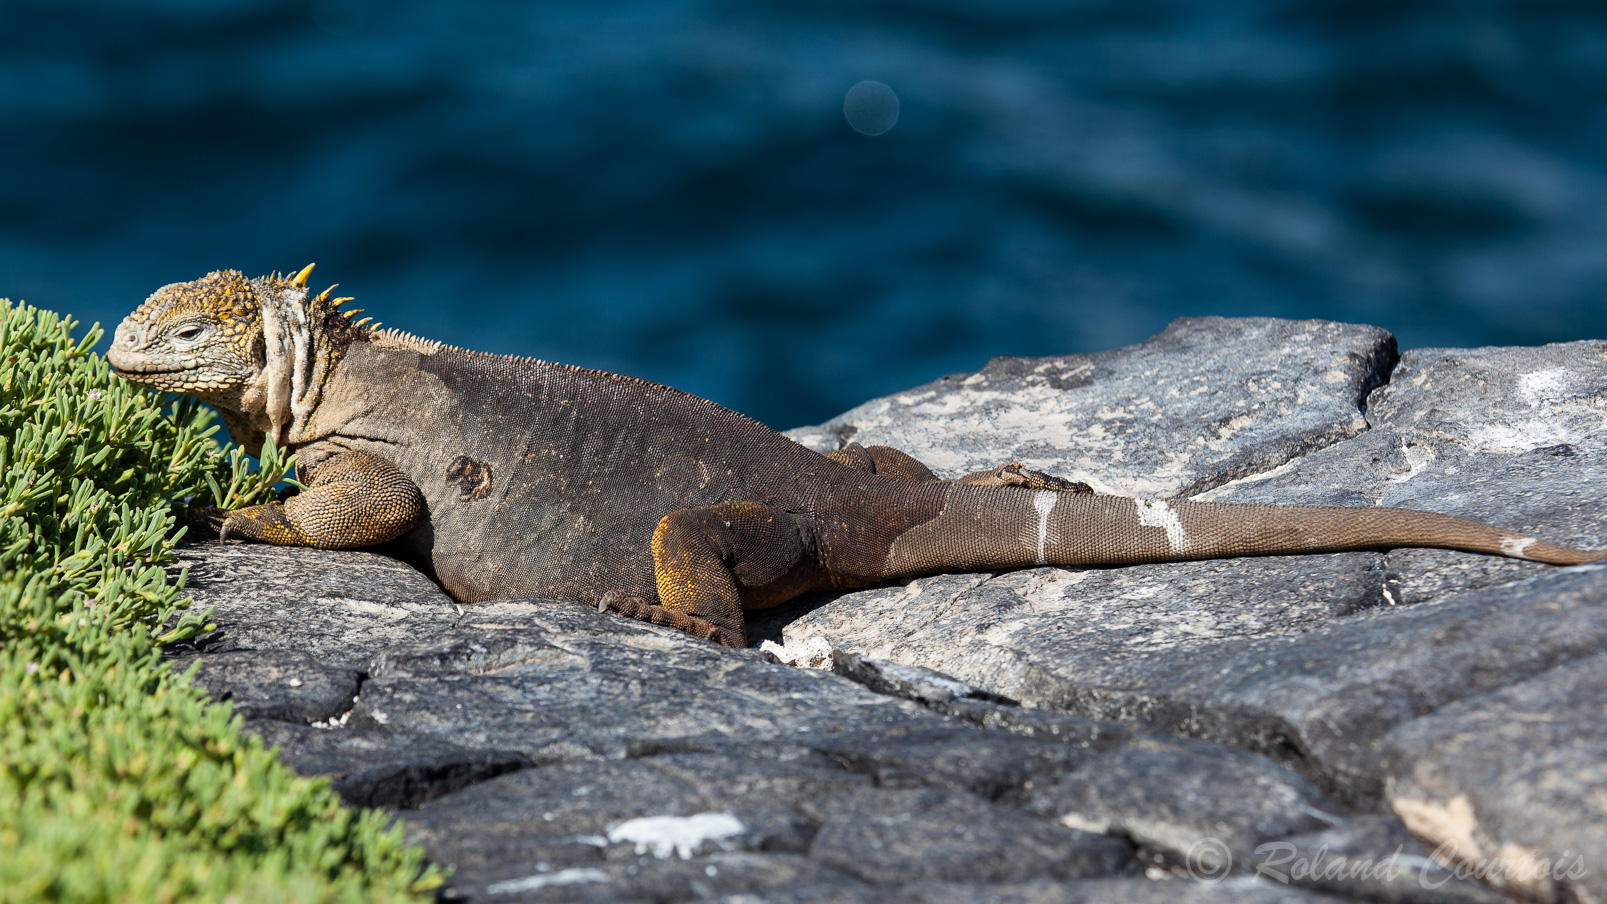 Iguane terrestre des Galapagos. Conolophus subcristatus, l'Iguane terrestre des Galapagos, est une espèce de sauriens de la famille des Iguanidae (WIKI)